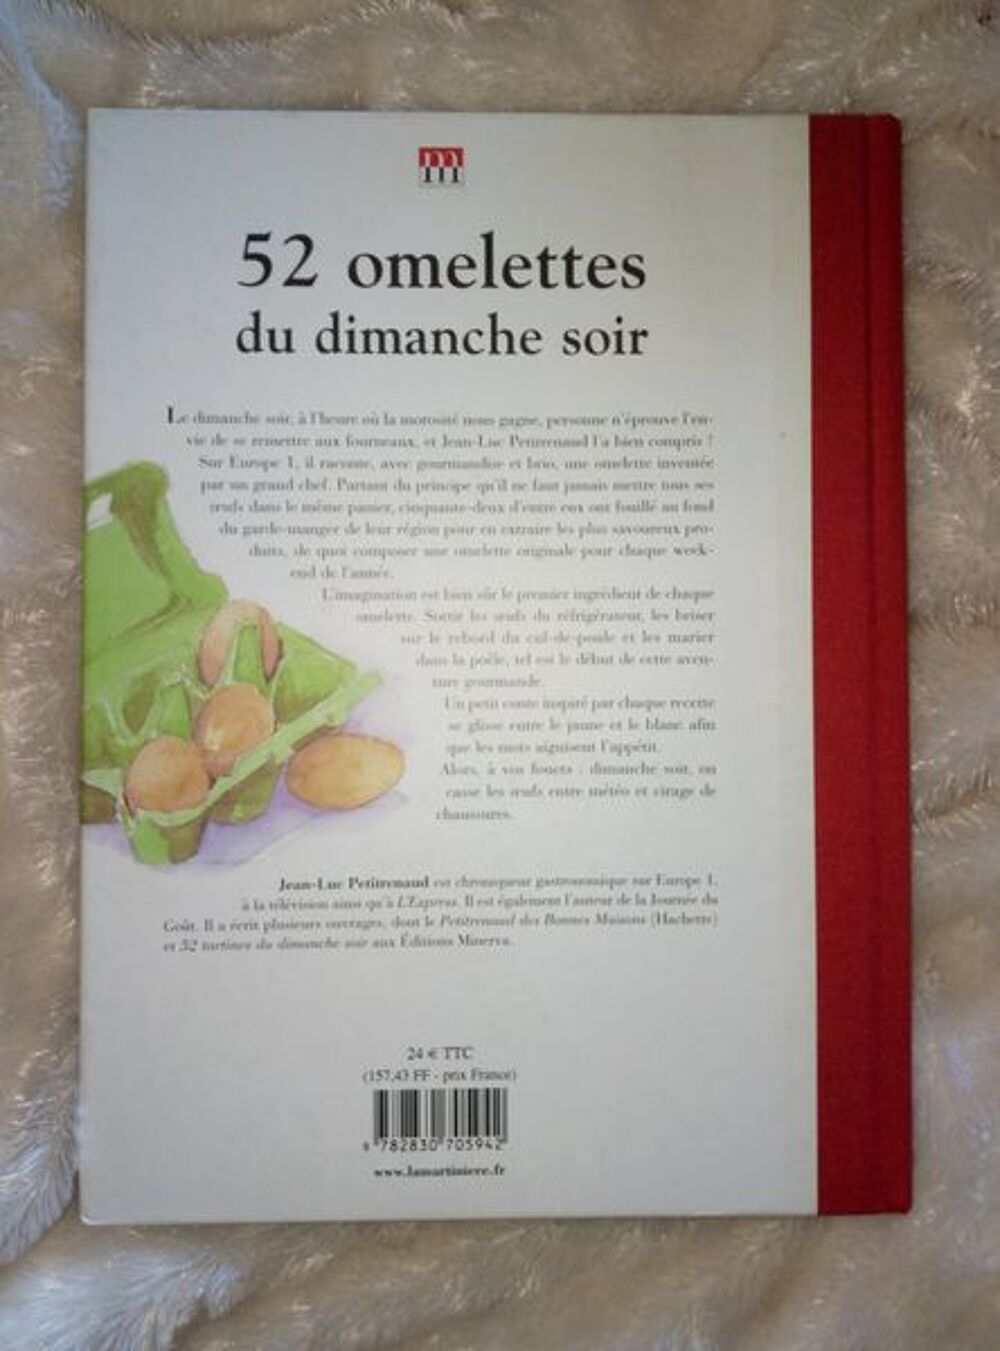 jean luc petitrenaud 52 omelettes du dimanche so Livres et BD